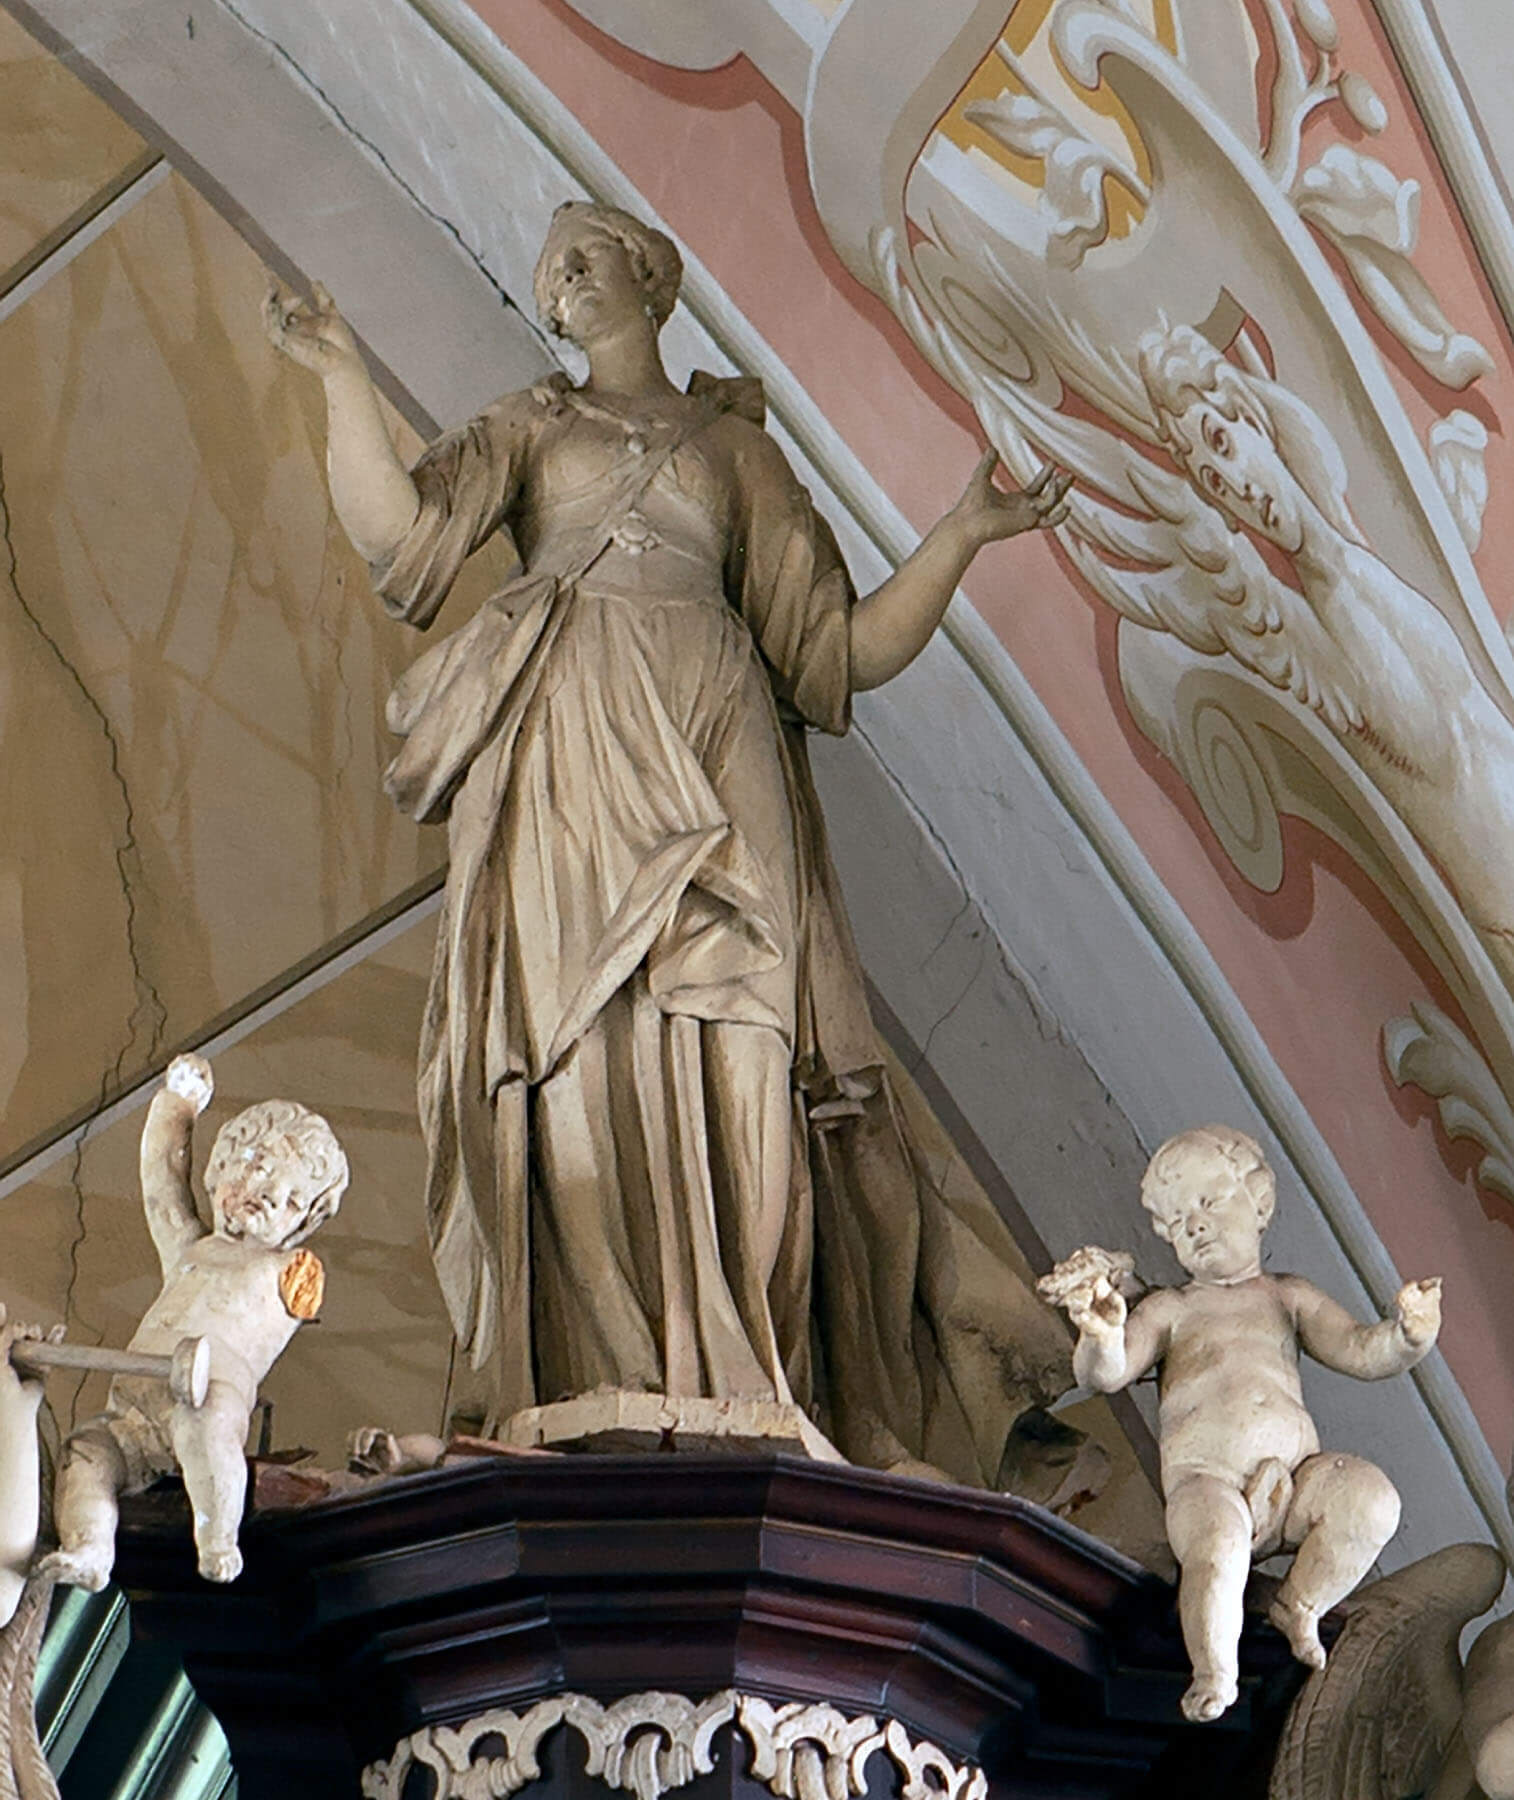 Štiavnické Bane: Barokové sochy - kráľ Dávid s harfou a sv. Cecília